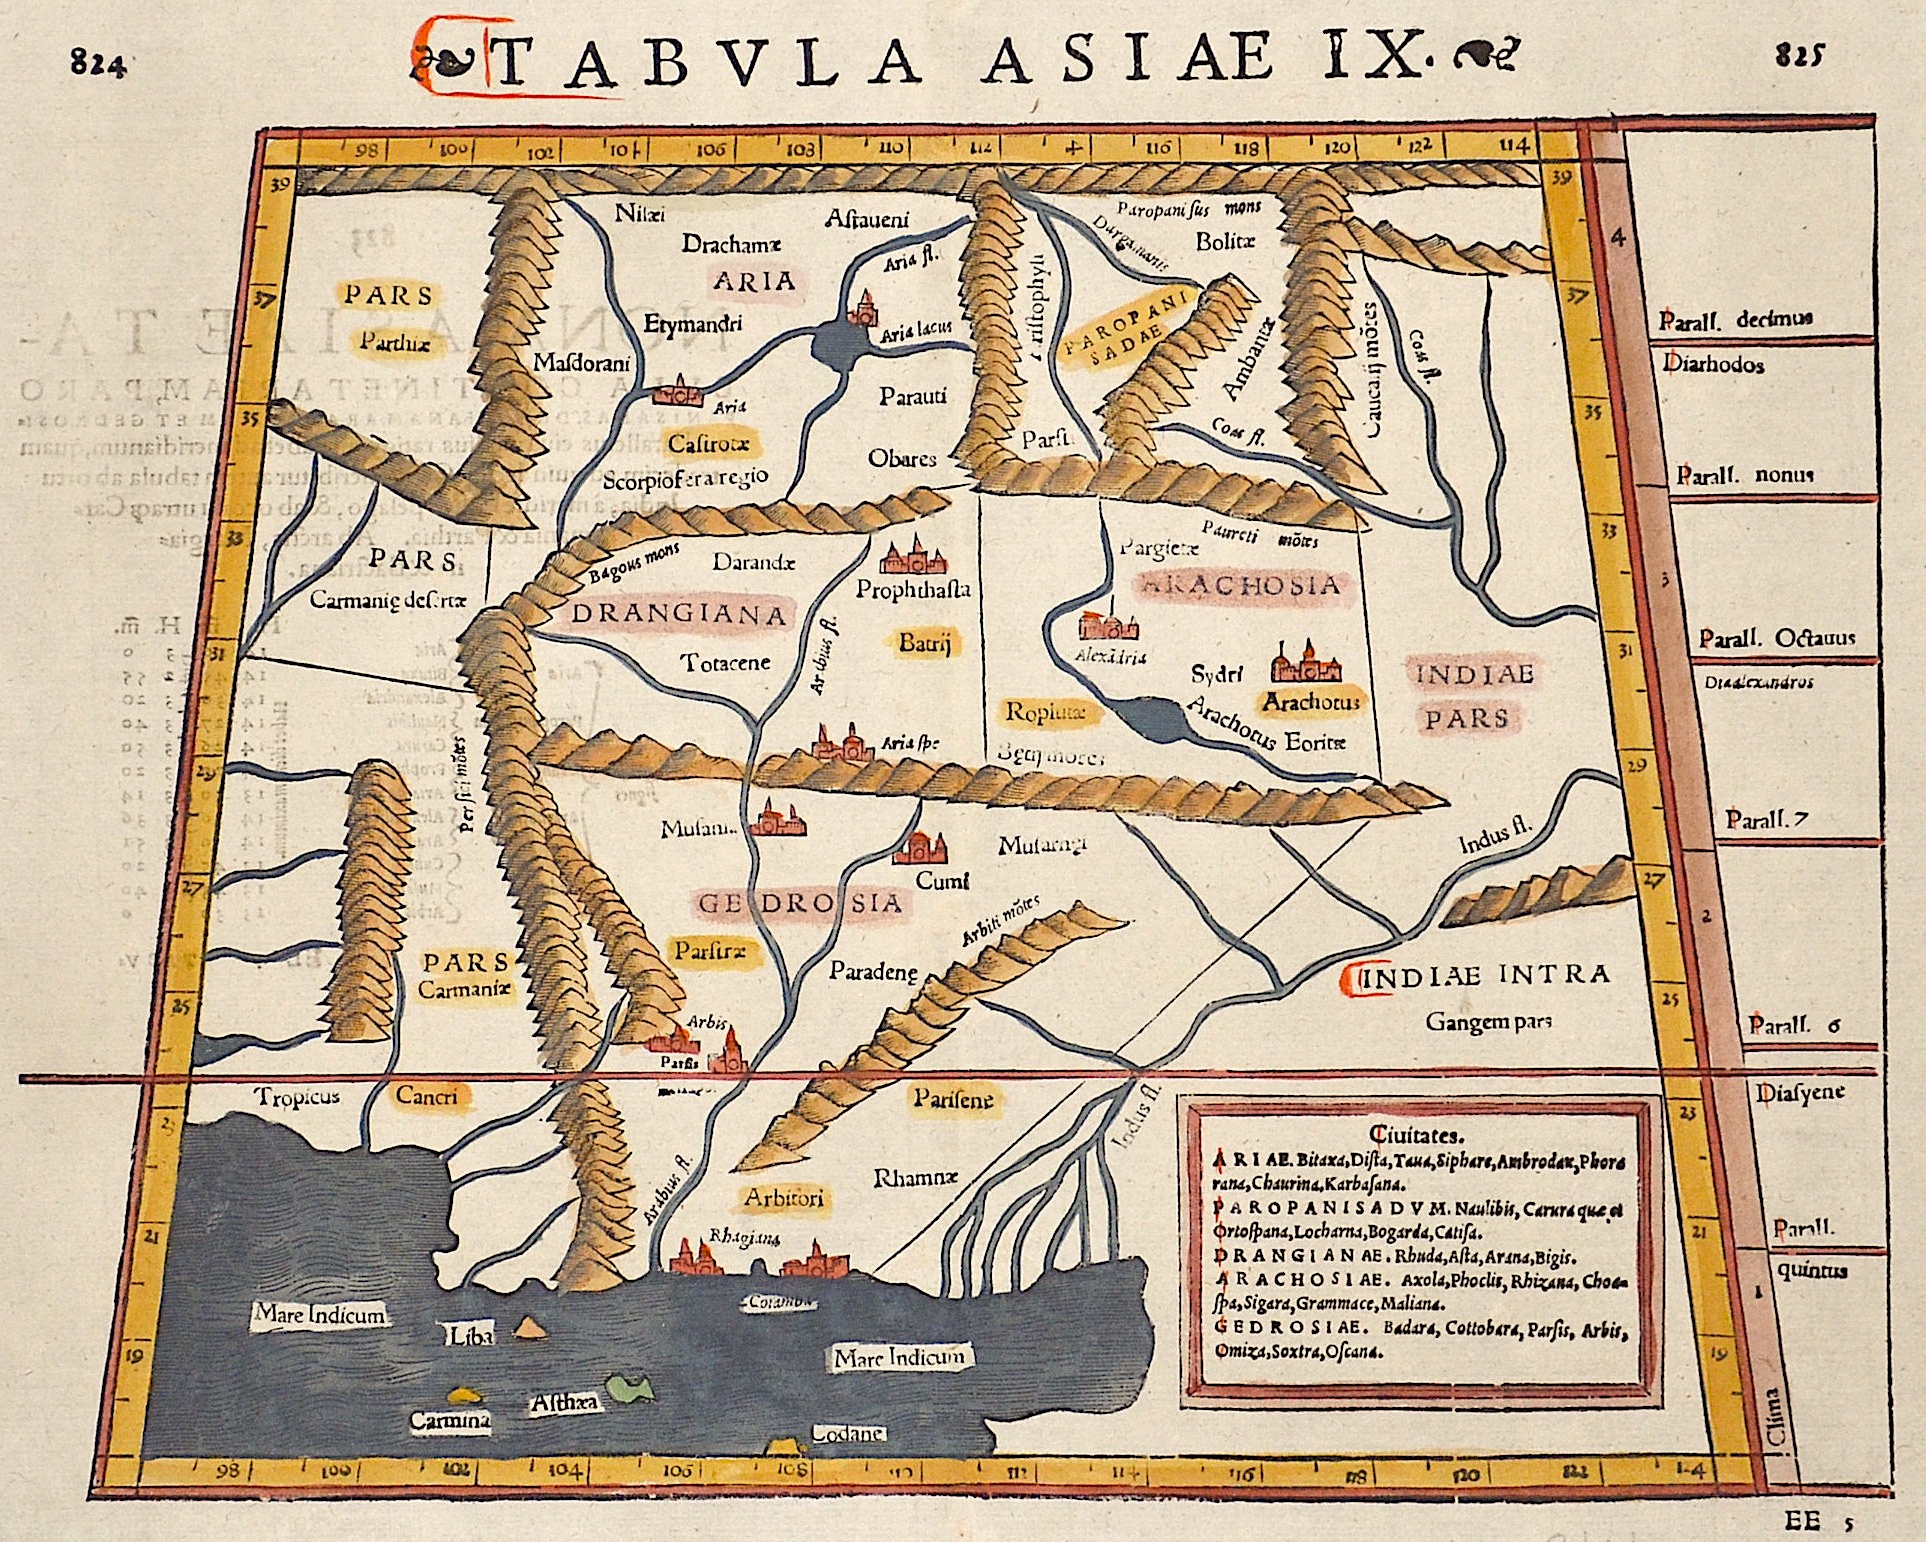 Ptolemy/Münster Sebastian Claudius Tabula Asiae IX